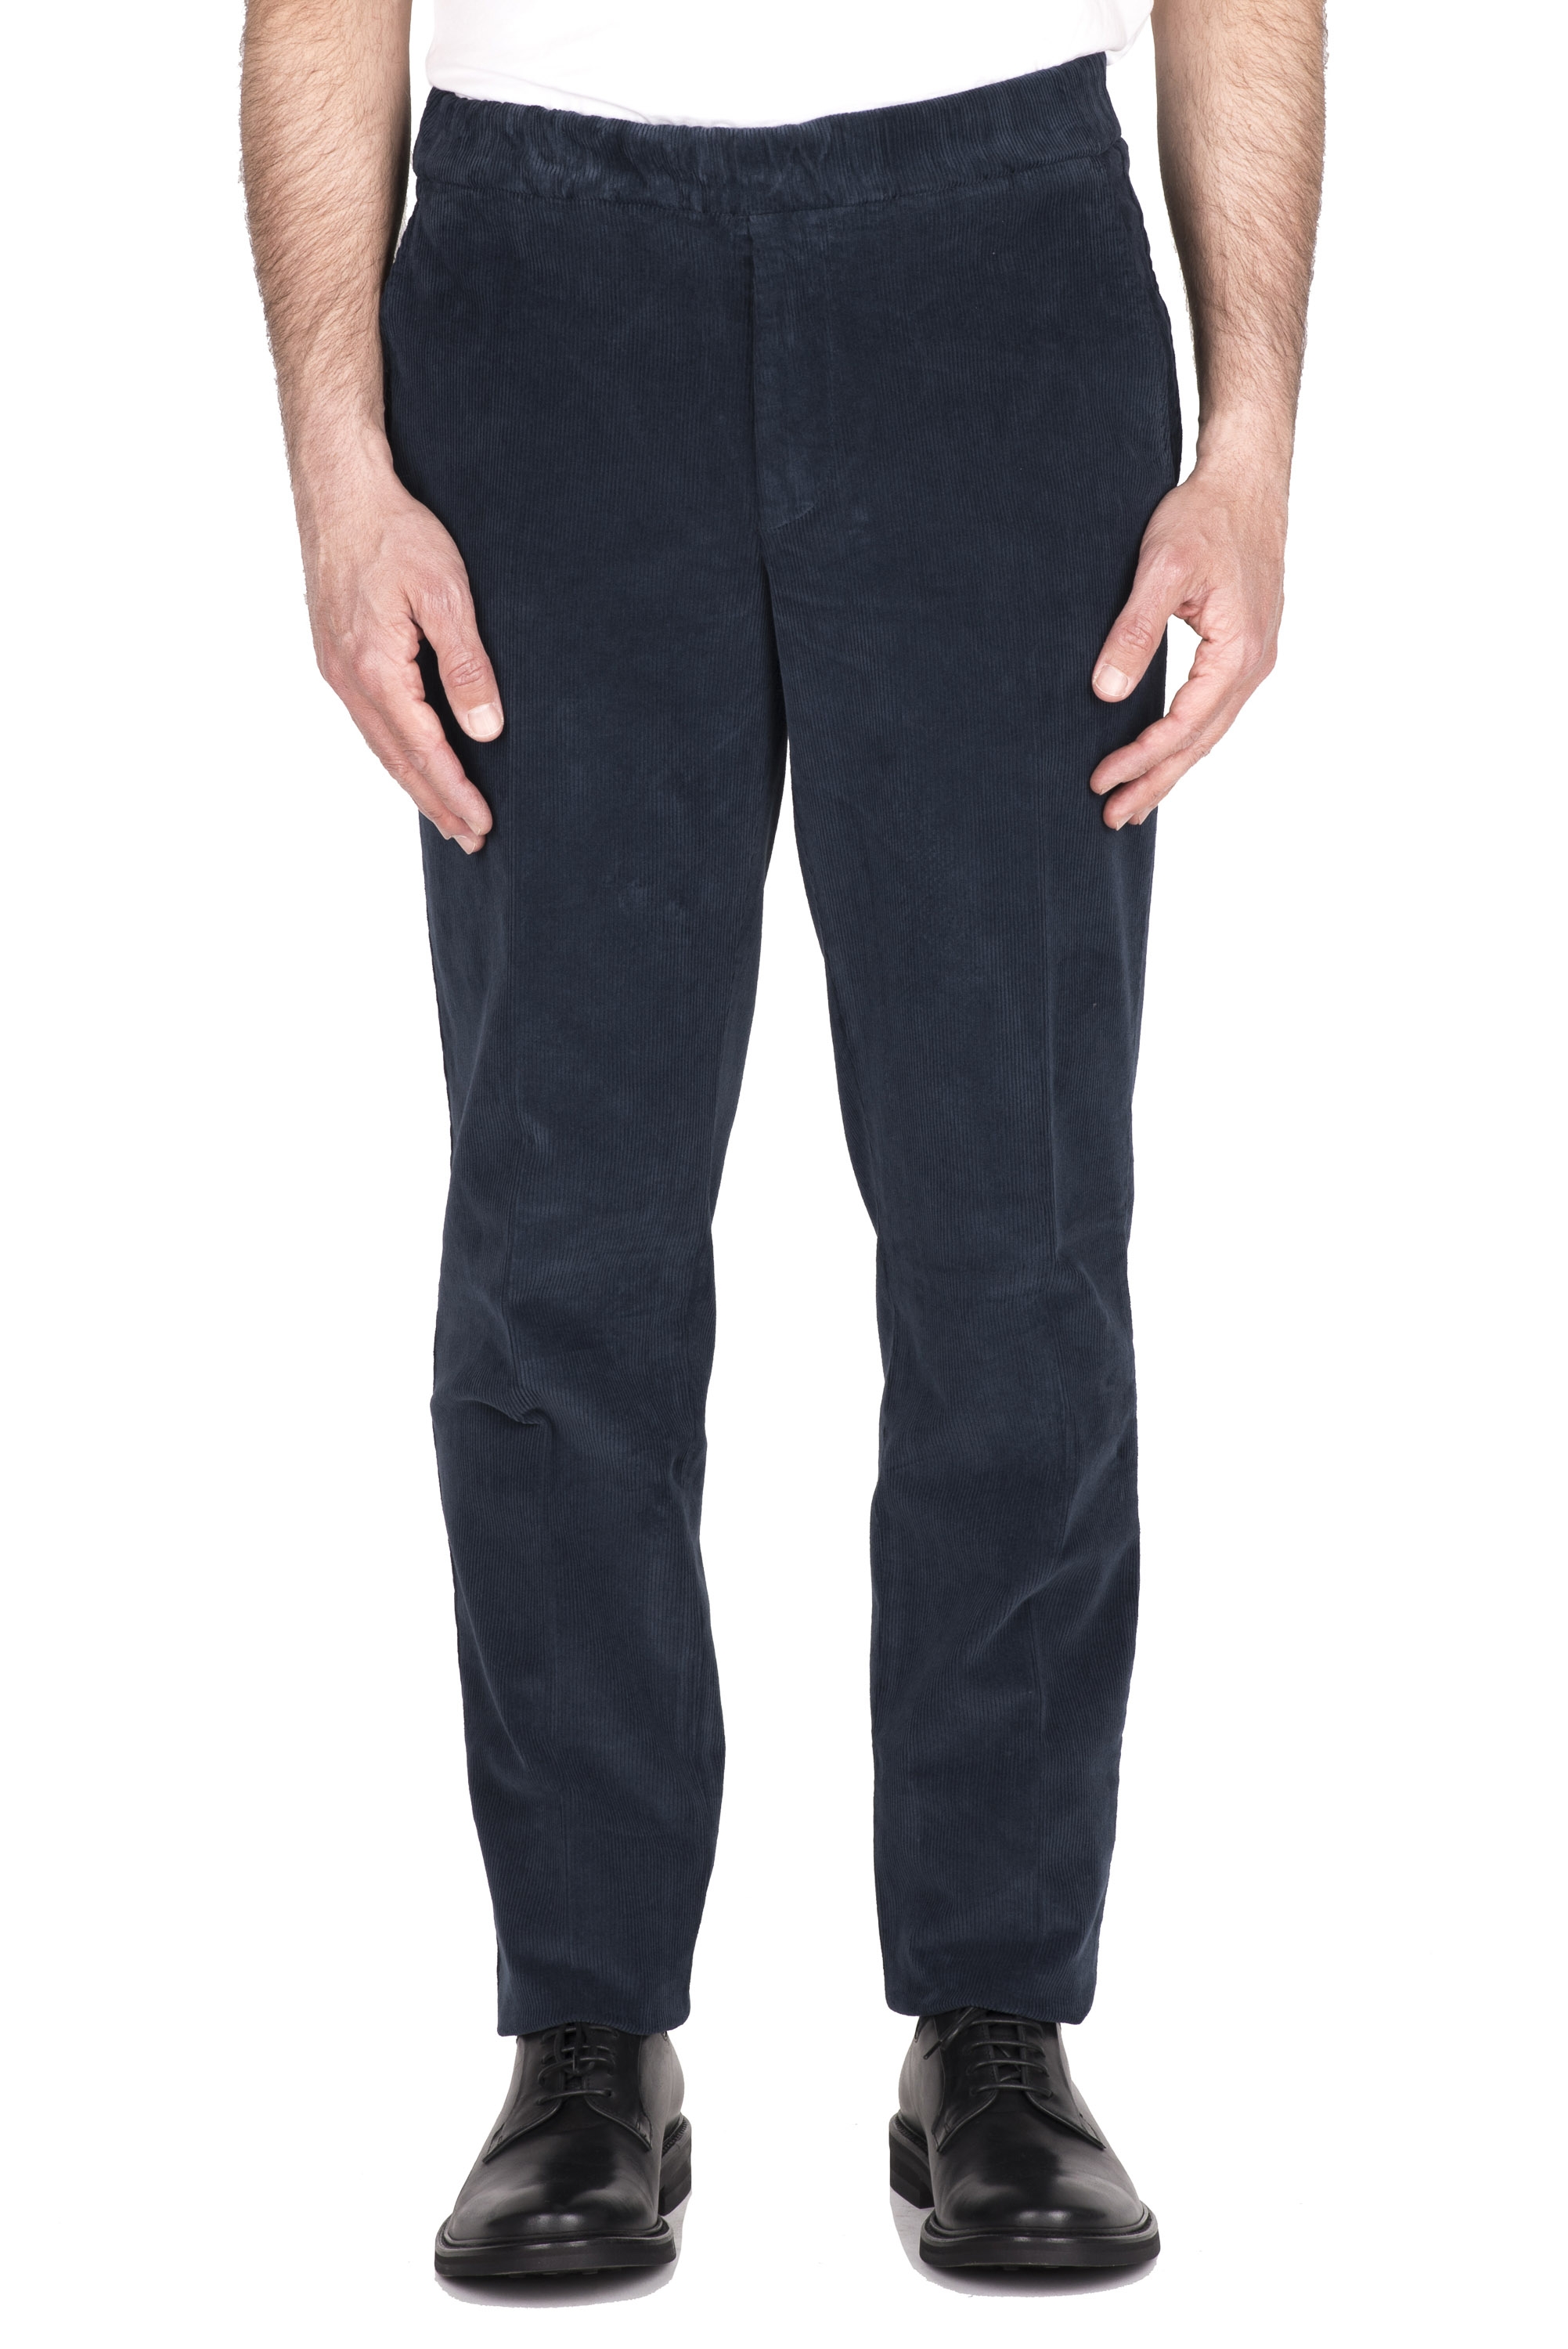 SBU 04627_23AW Pantaloni comfort in velluto elasticizzato blu 01